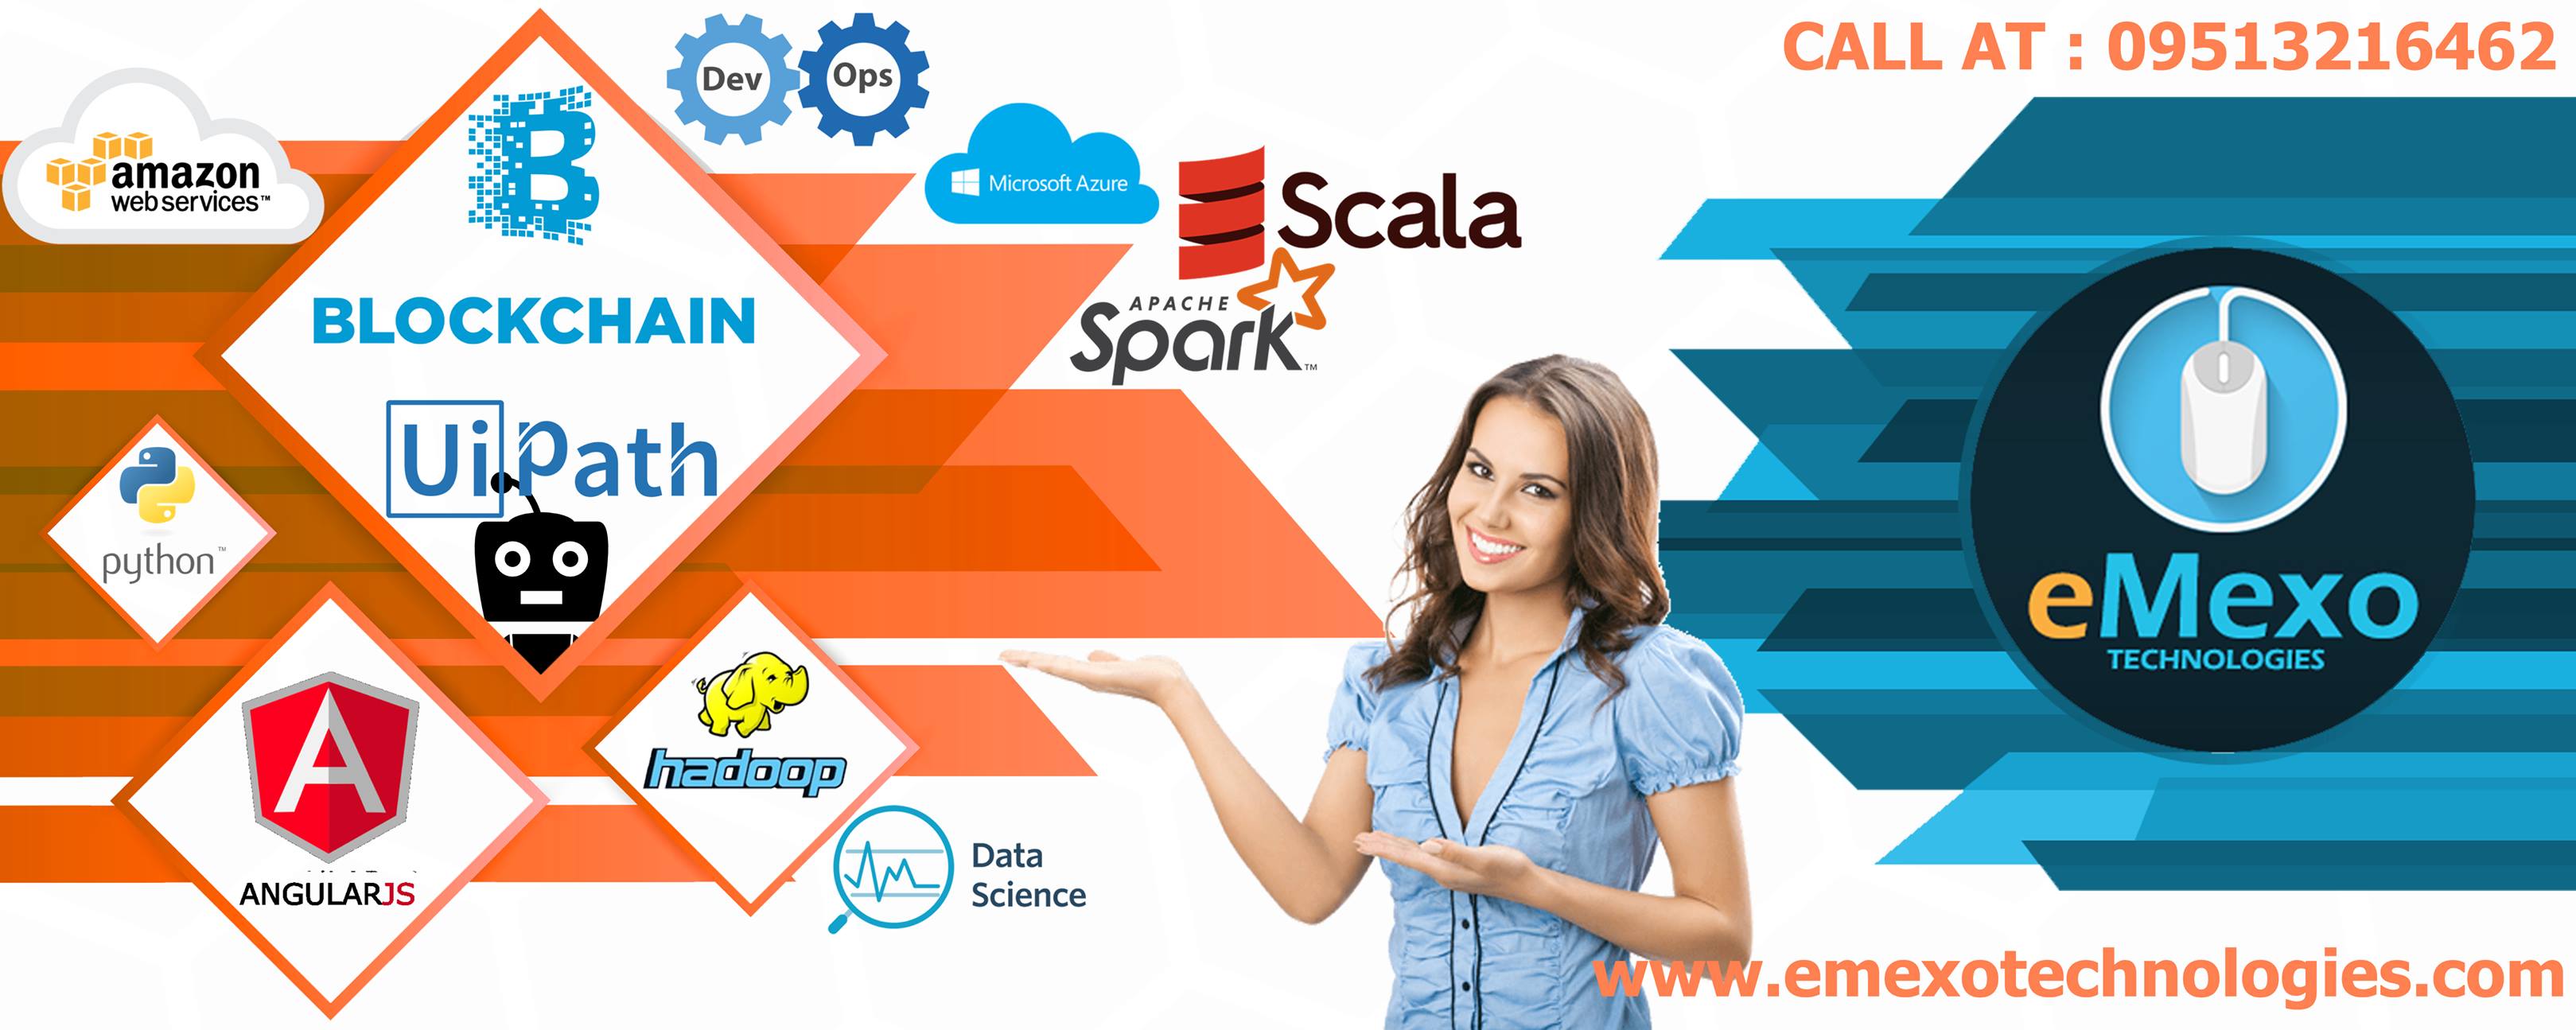 Apache Spark & Scala Training Institute in Electronic City Bangalore, Bangalore, Karnataka, India